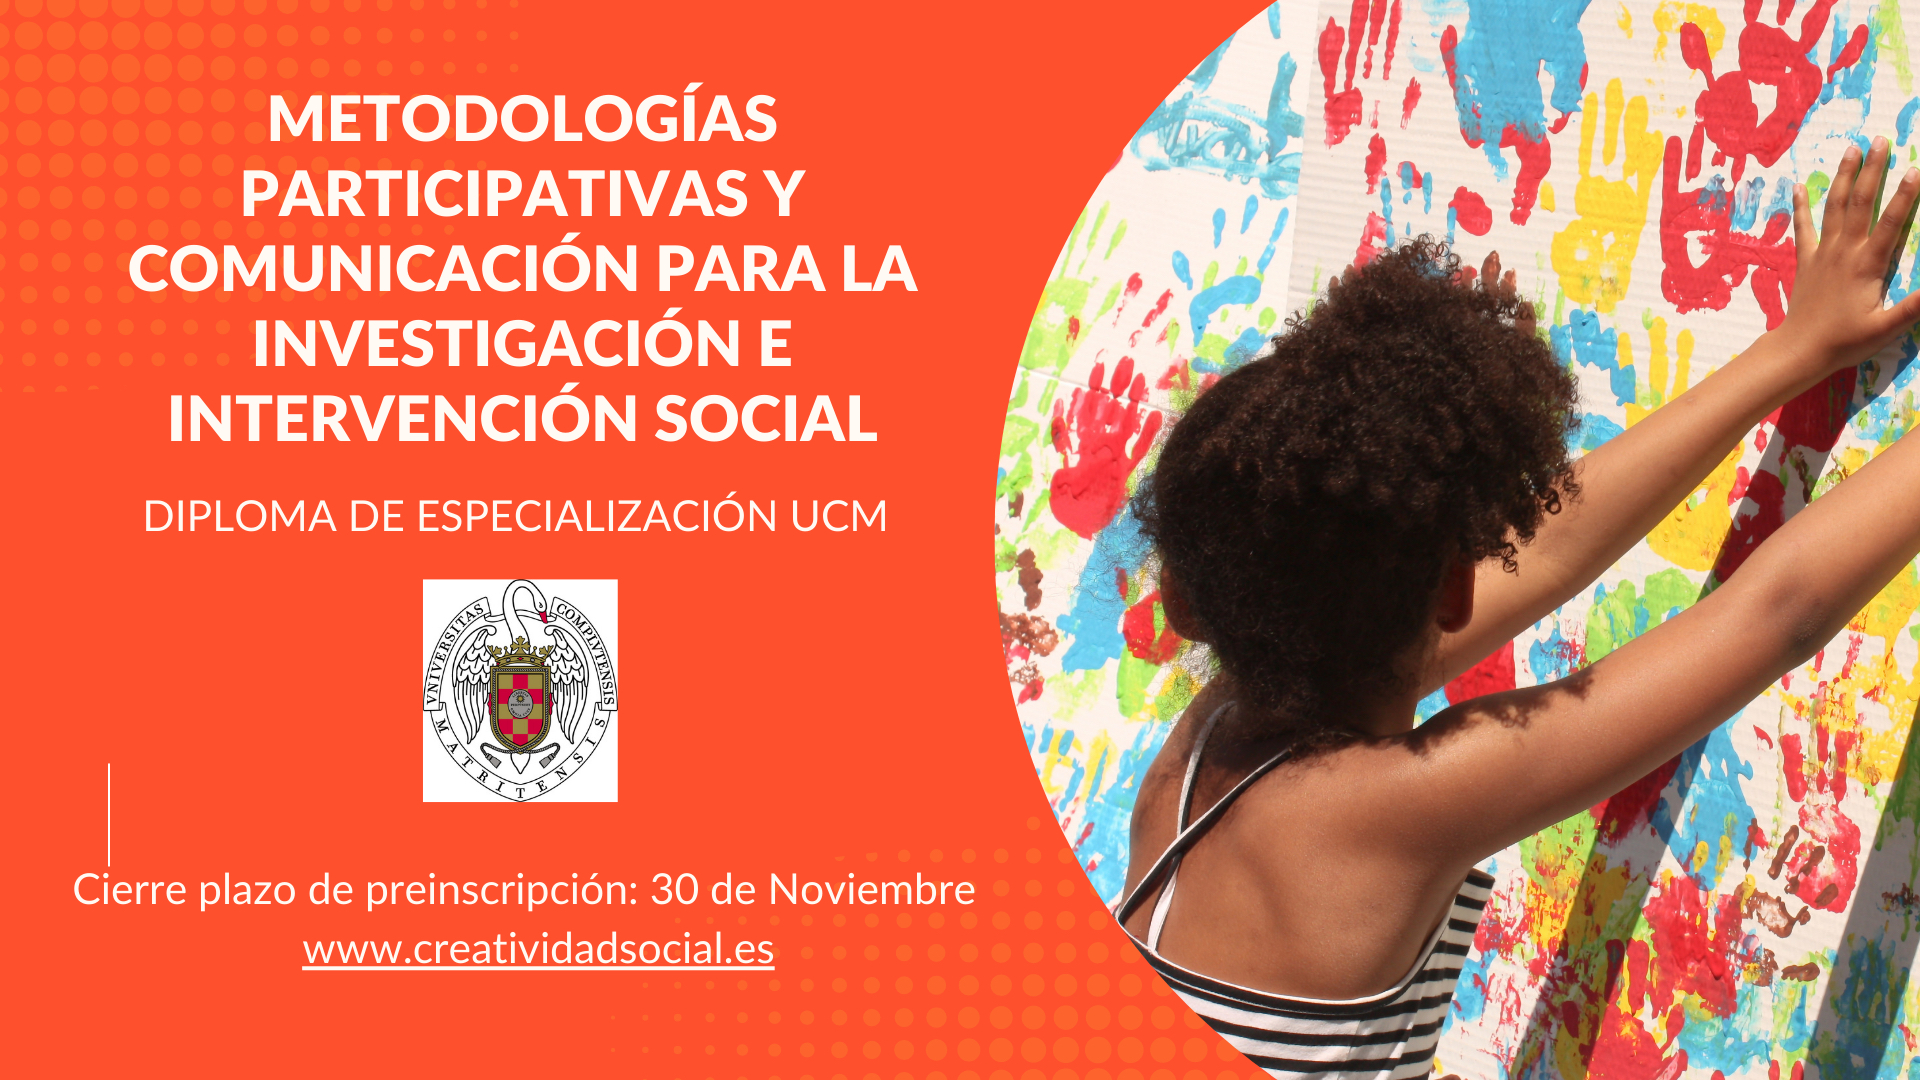 DIPLOMA DE ESPECIALIZACIÓN UCM - Metodologías participativas y comunicación para la investigación e intervención social